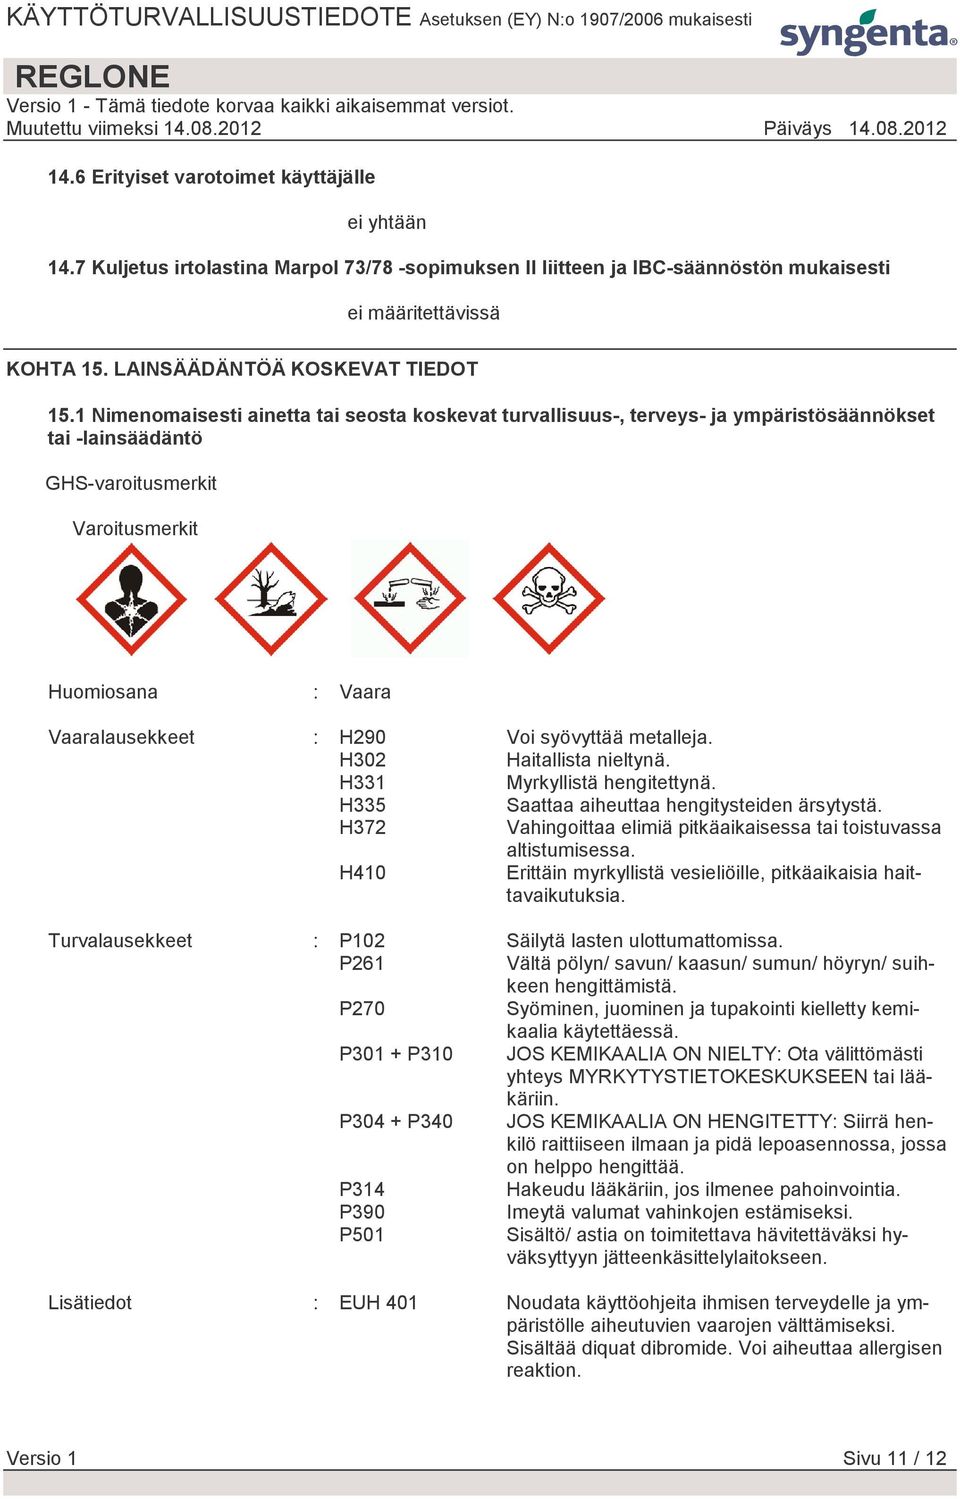 1 Nimenomaisesti ainetta tai seosta koskevat turvallisuus-, terveys- ja ympäristösäännökset tai -lainsäädäntö GHS-varoitusmerkit Varoitusmerkit Huomiosana : Vaara Vaaralausekkeet : H290 Voi syövyttää